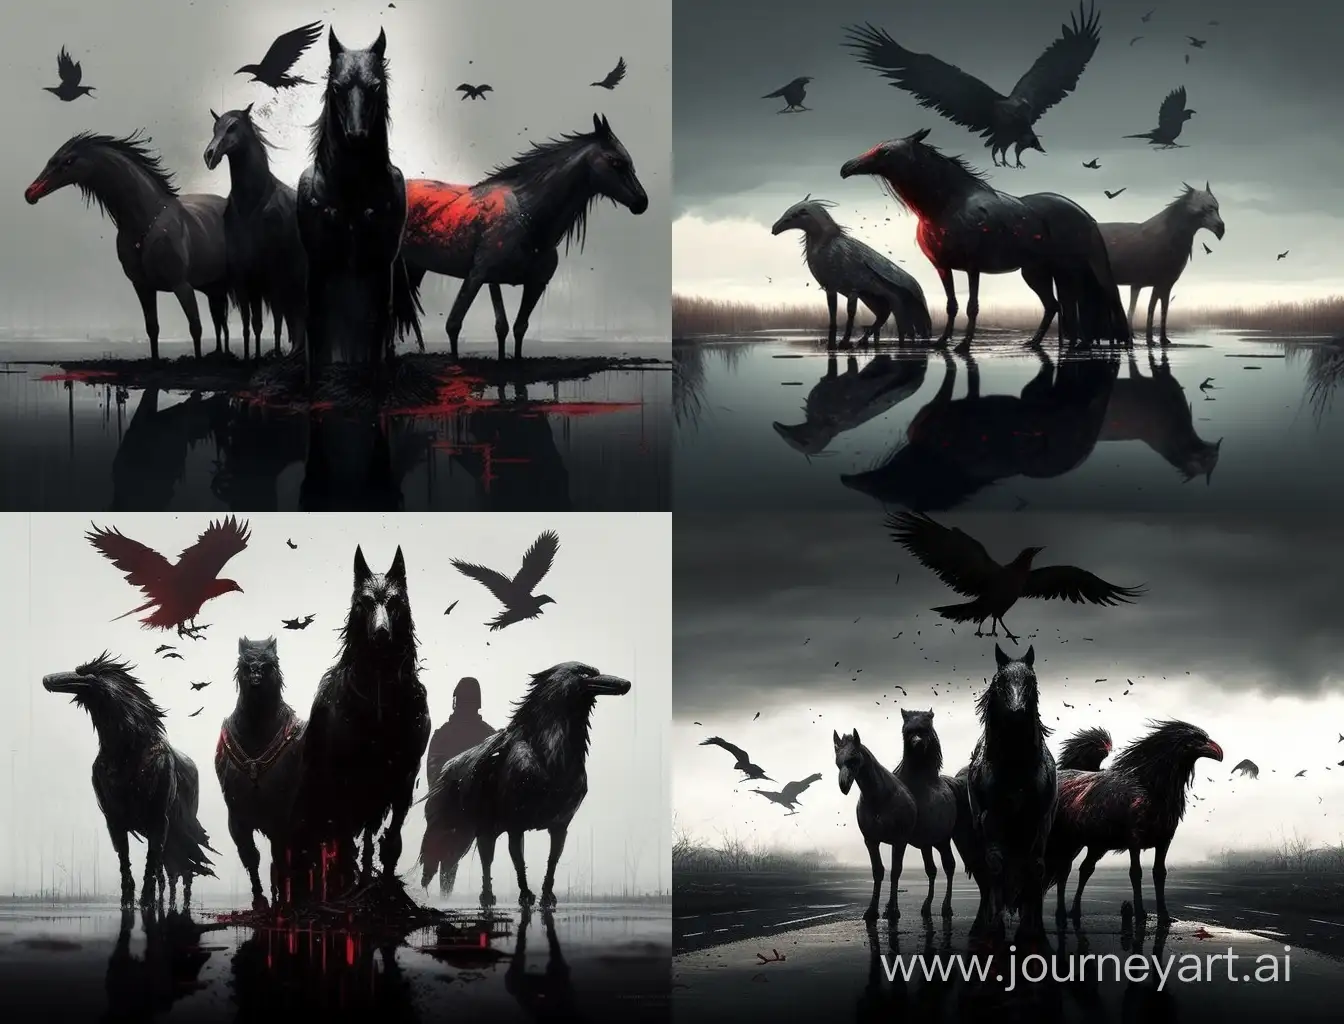 Imagen épico-realista. El cielo oscurecido por cuervos negros. En medio de la imagen (de derecha a izquierda) cuatro caballos: un caballo rojo, otro negro, otro bayo y otro blanco. Los cuatro caballos cabalgan sobre un charco de sangre